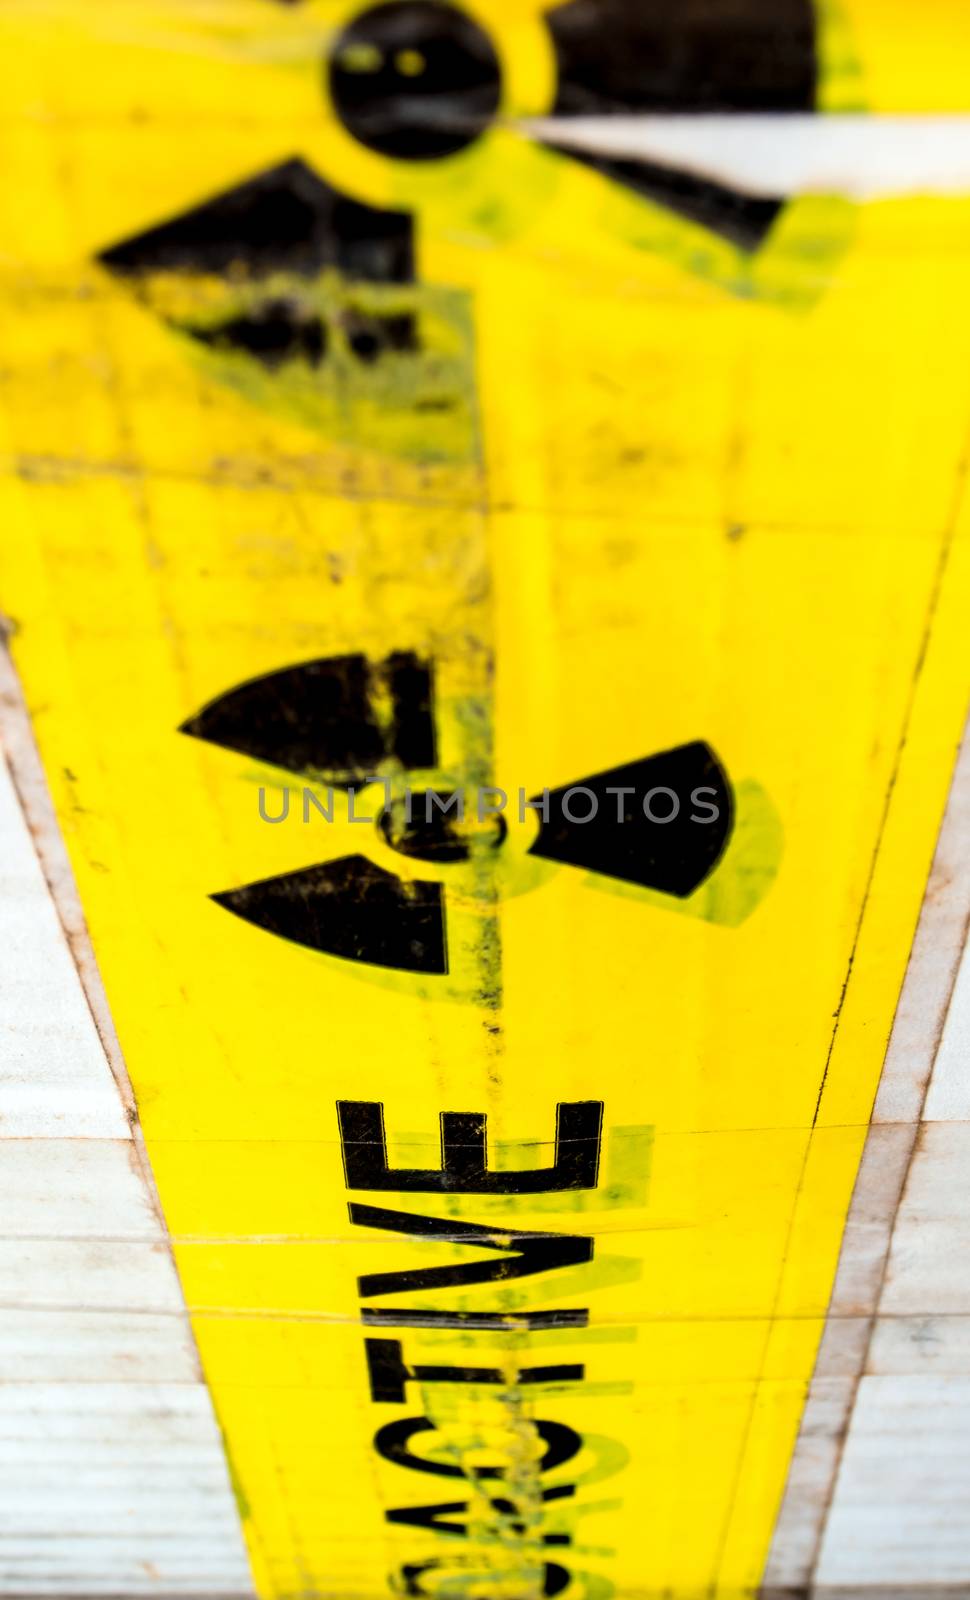 Radioactive material warning sign at the package by Satakorn